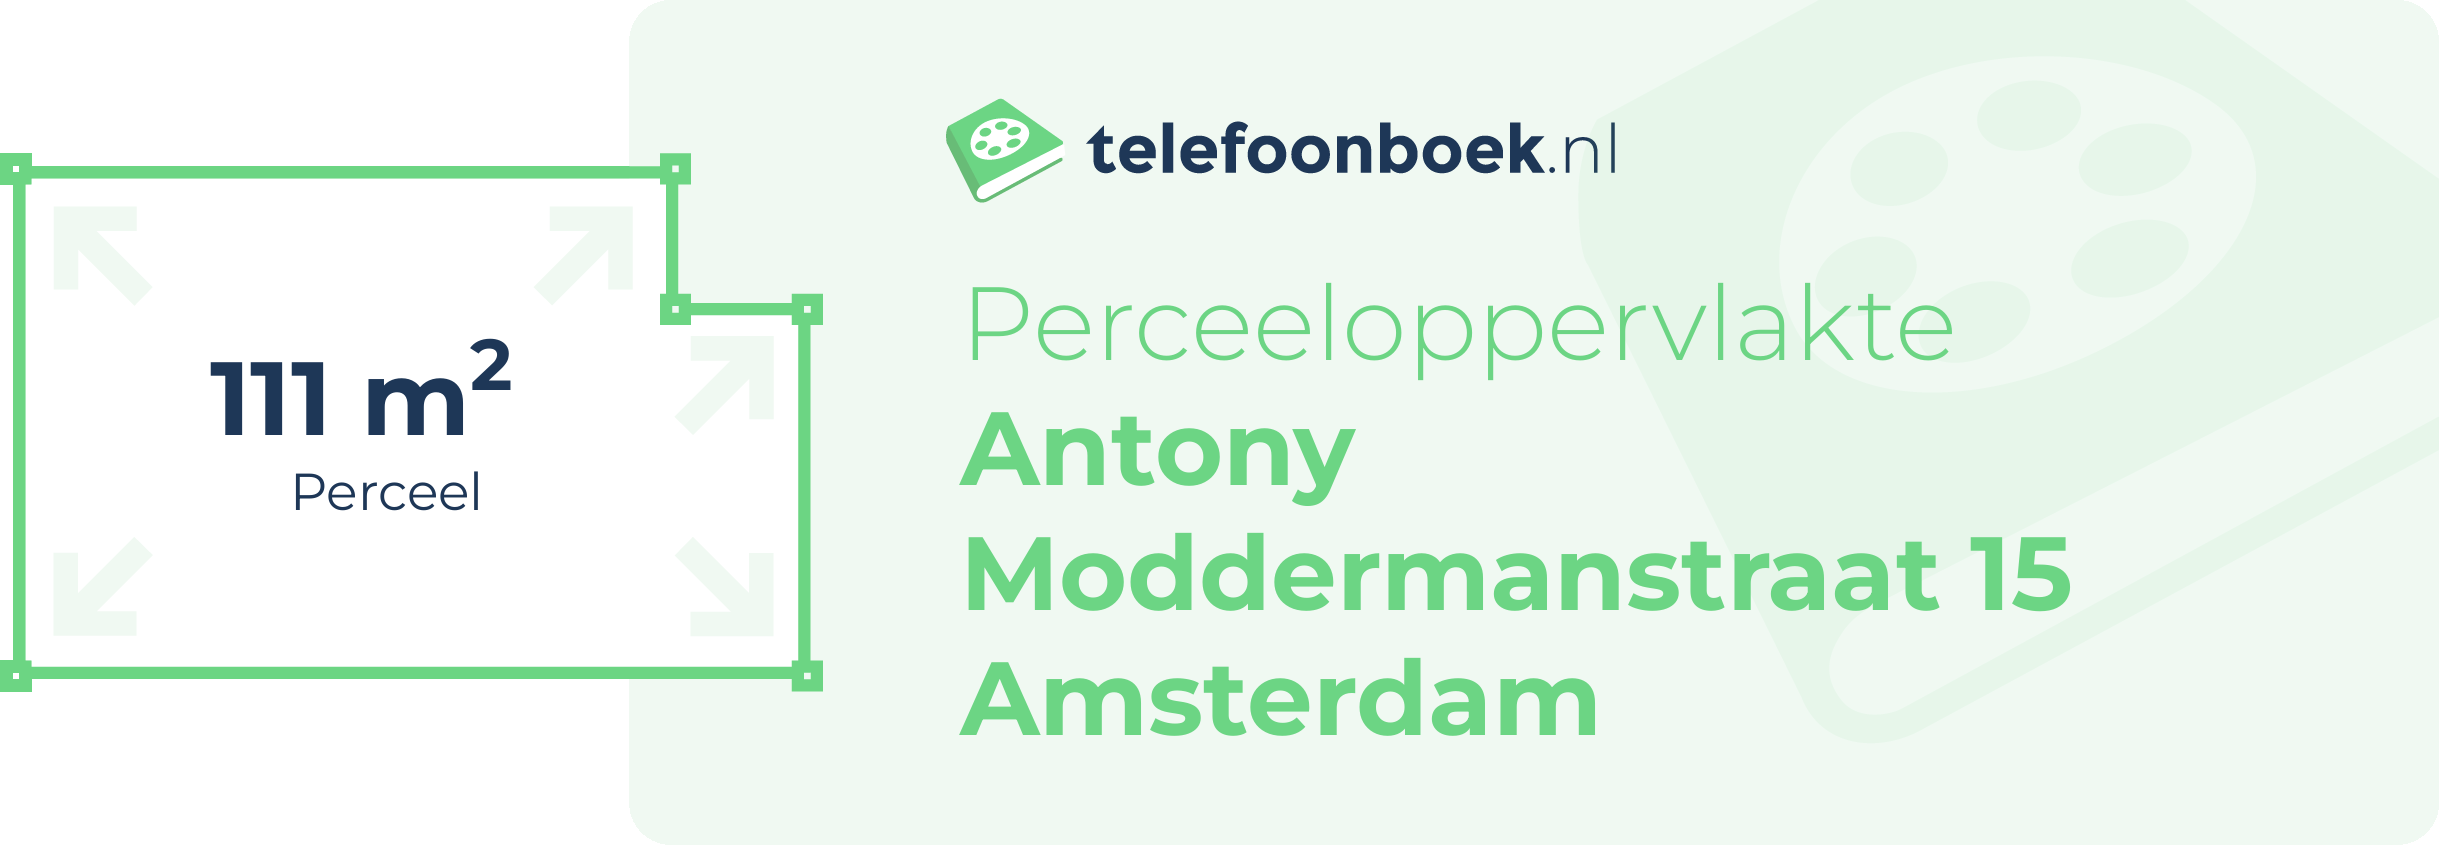 Perceeloppervlakte Antony Moddermanstraat 15 Amsterdam